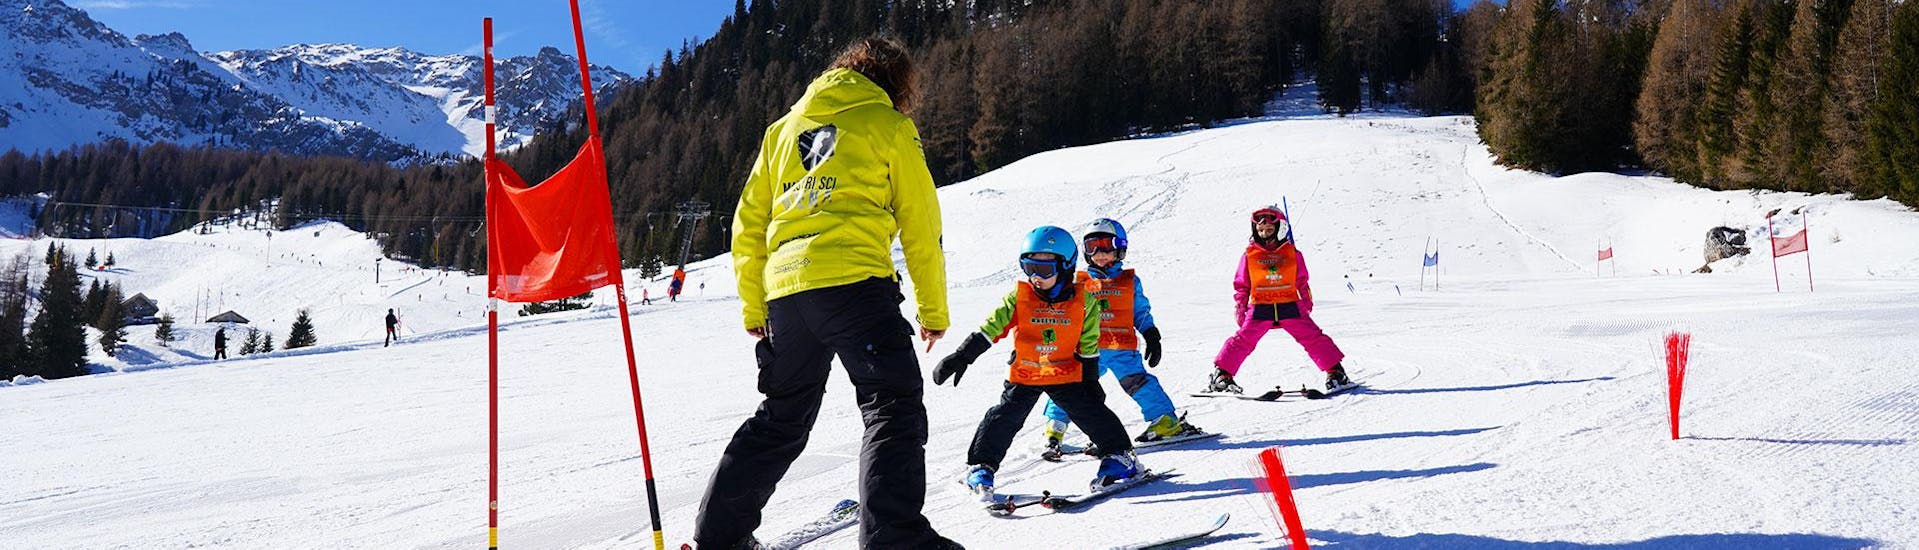 Lezioni di sci per bambini con esperienza (4-14 a.).